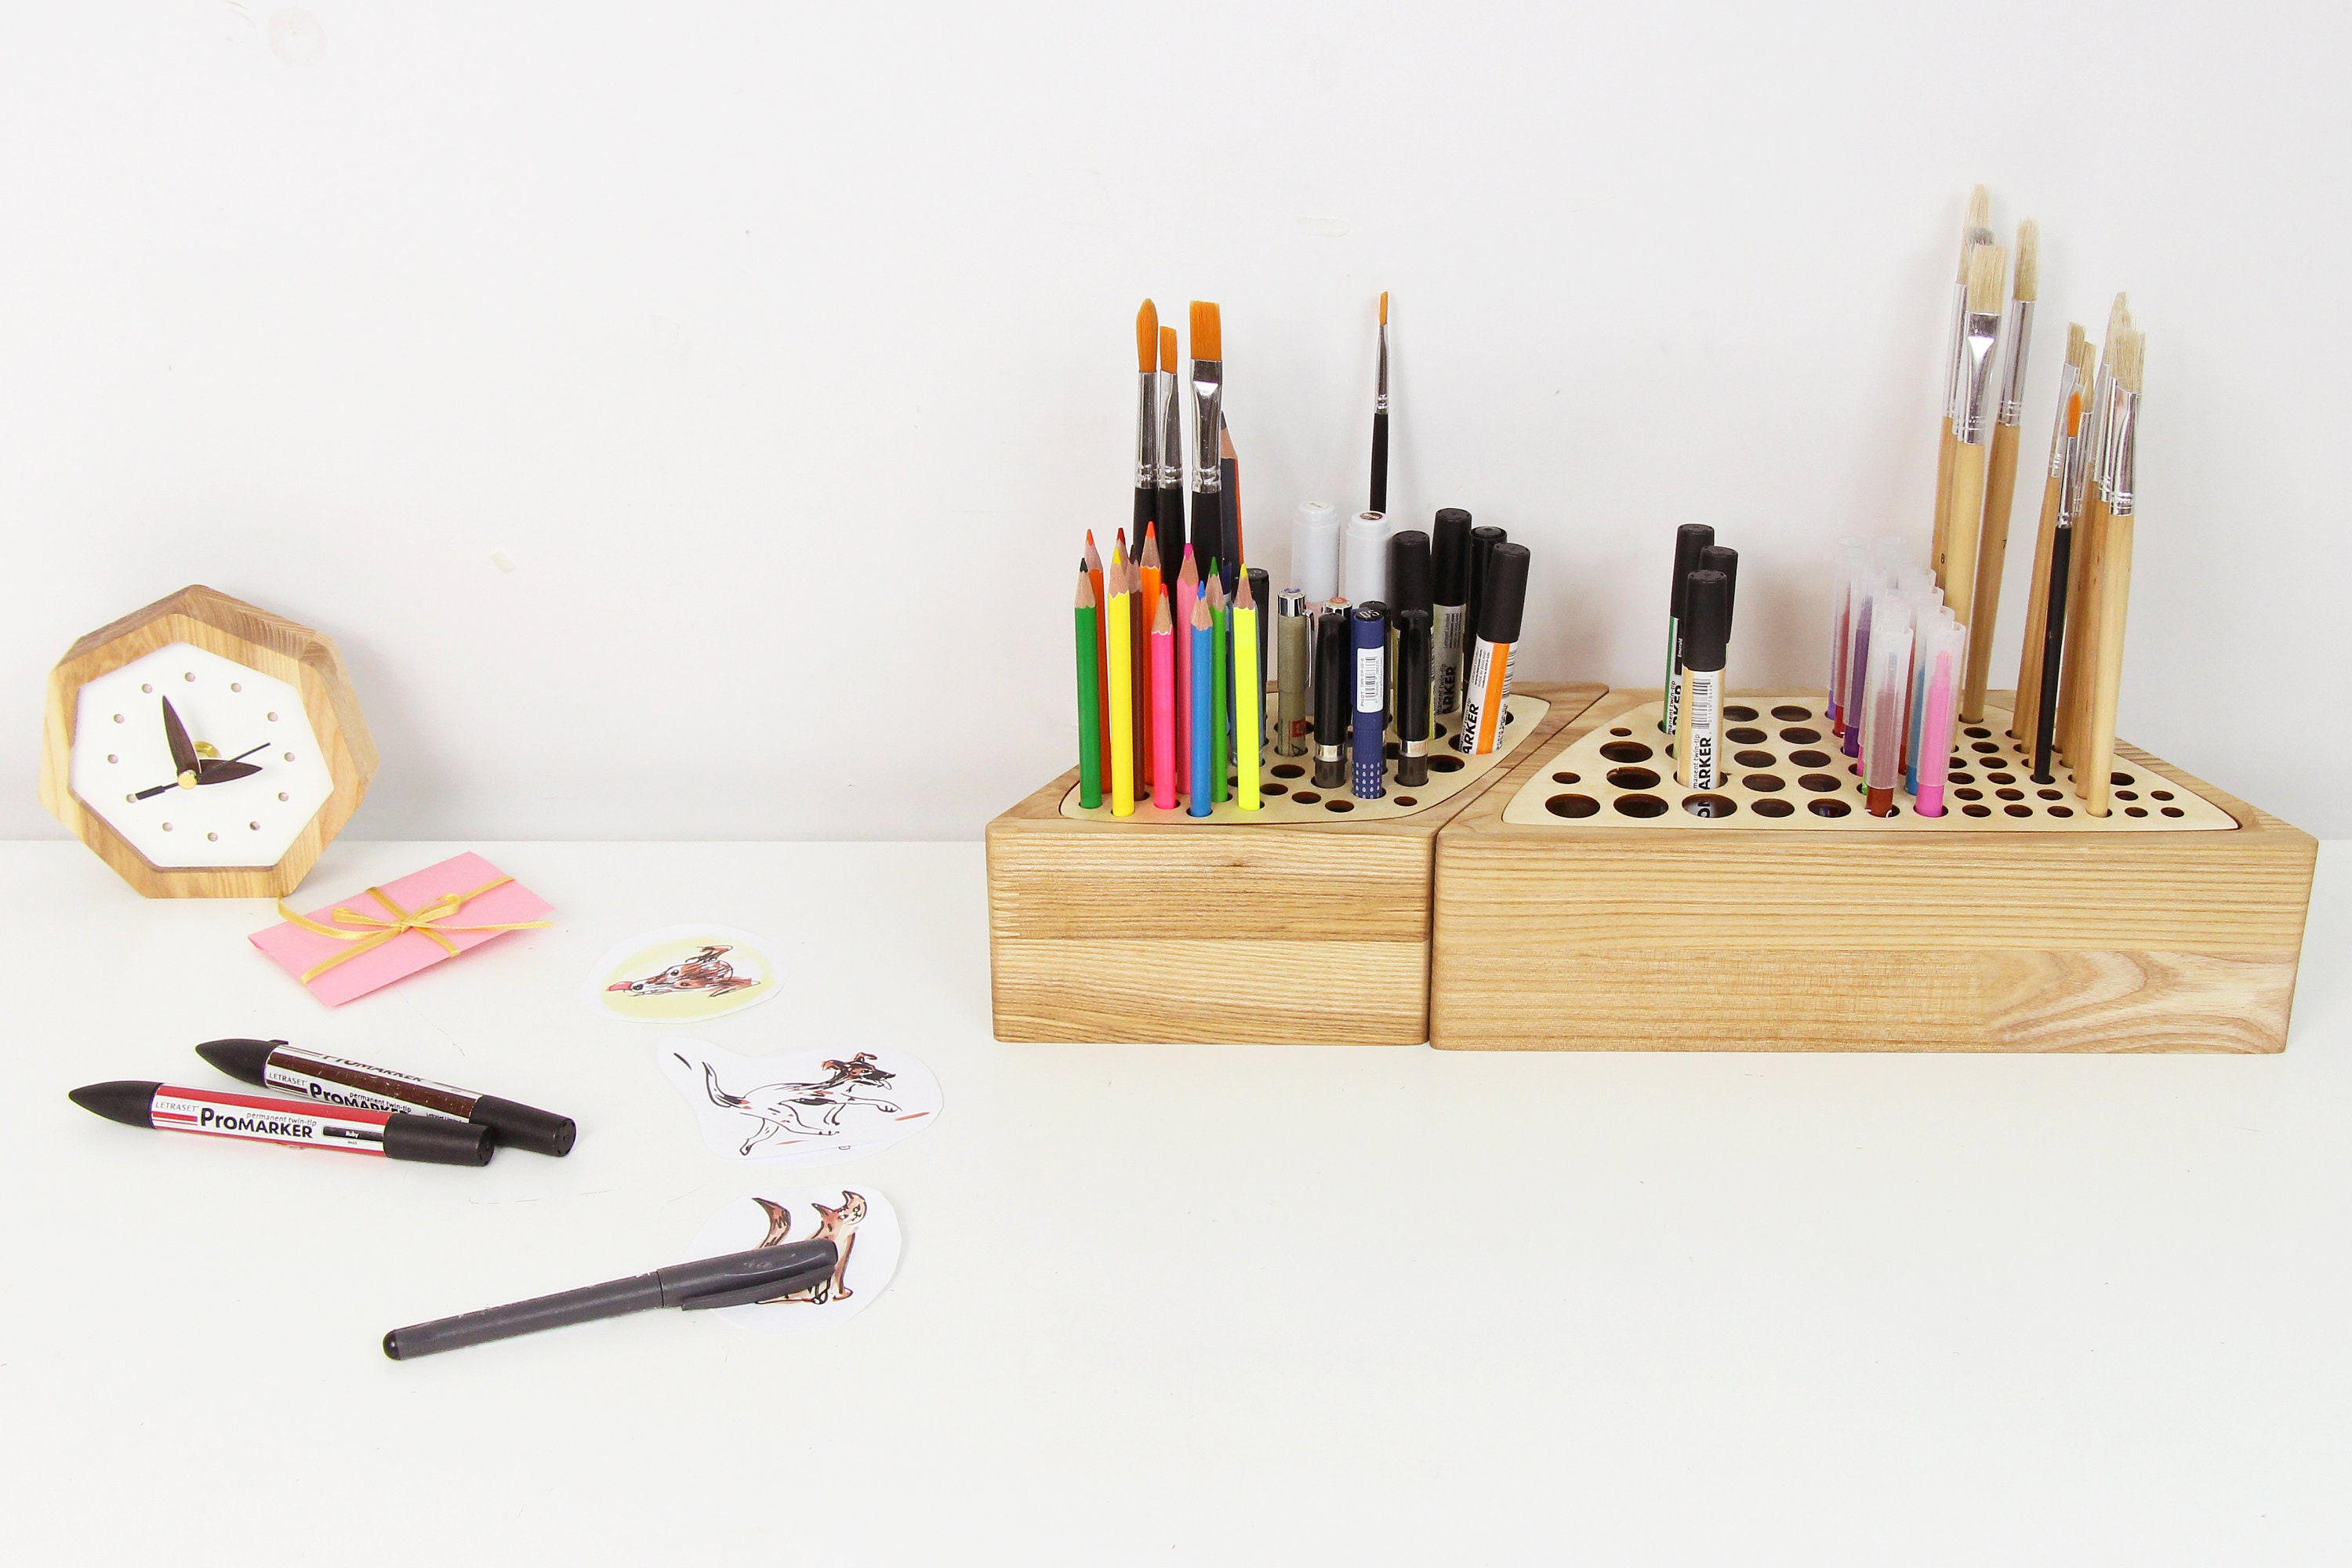 SimbaKart Wooden Pen Pencil Holder for Desk, Paintbrush Holder, Organizer for Office Desktop, Home Decor, Wooden Pen Holder, Workspace Organizer